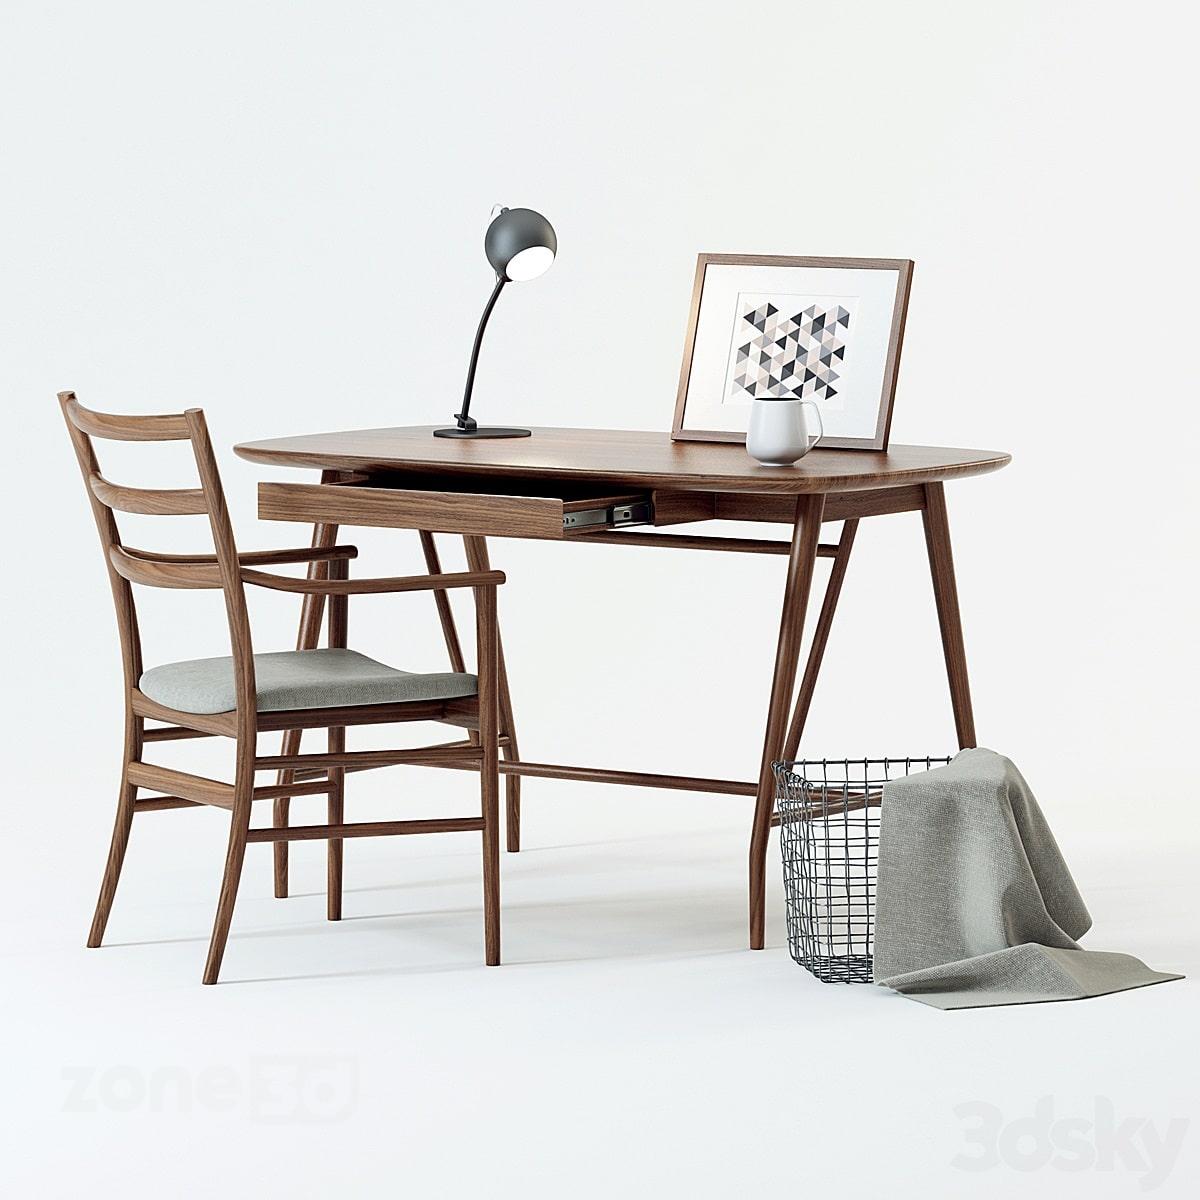 آبجکت میز کار چوبی اسکاندیناوی با صندلی پارچه ای و چوبی به همراه لوازم دکوری و چراغ رومیزی